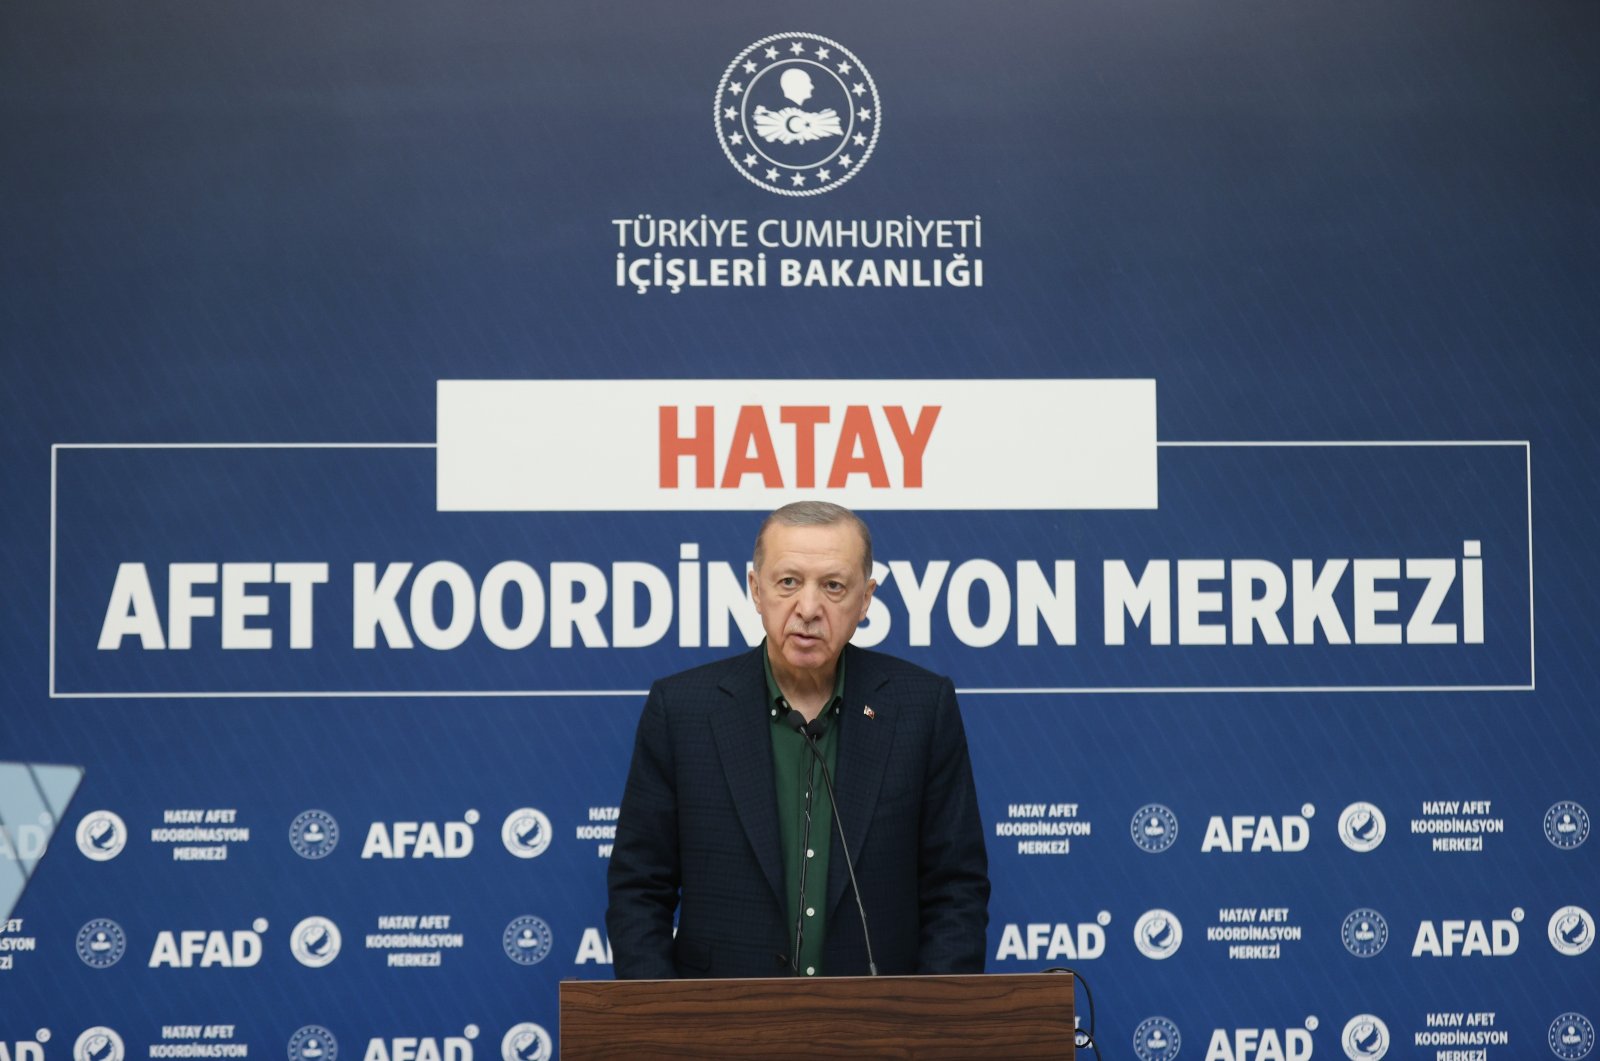 Türkiye untuk membangun kembali kota-kota yang hancur akibat gempa dalam segala aspek: Erdoğan